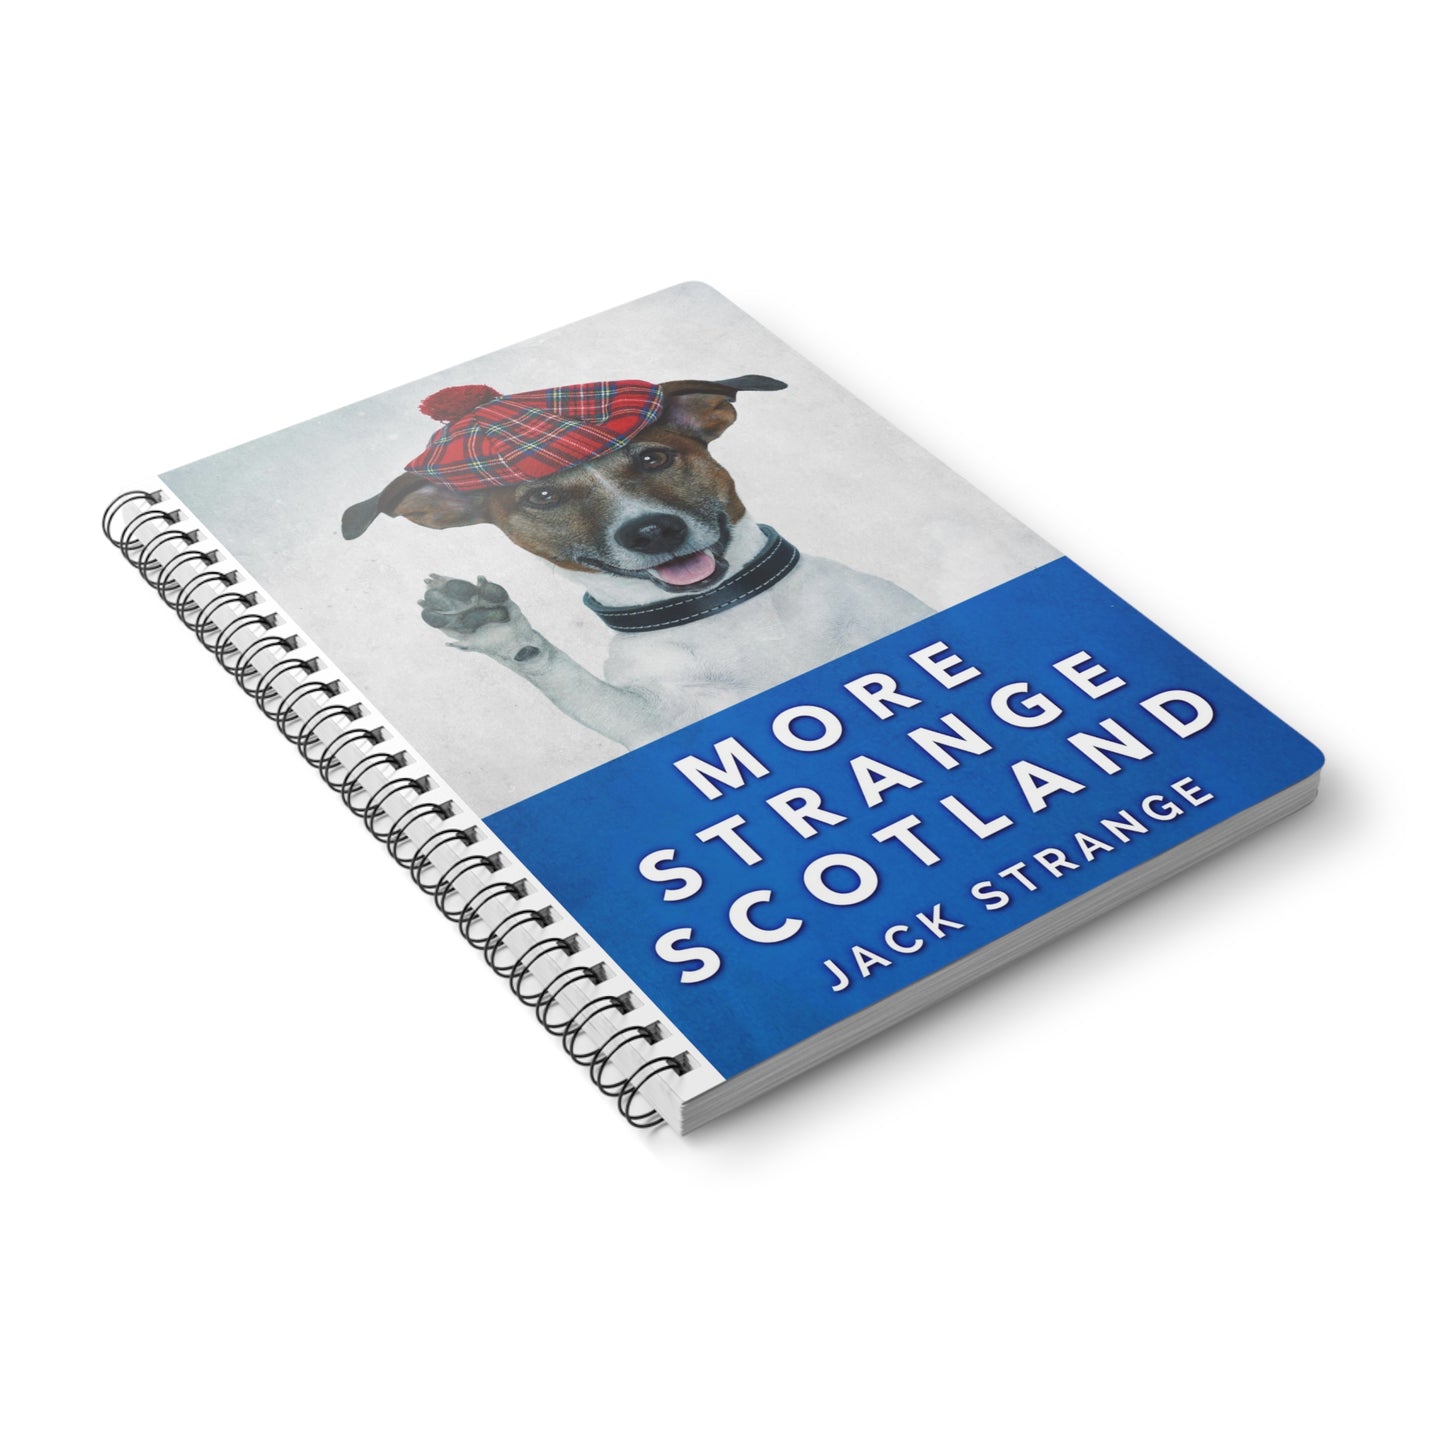 More Strange Scotland - A5 Wirebound Notebook